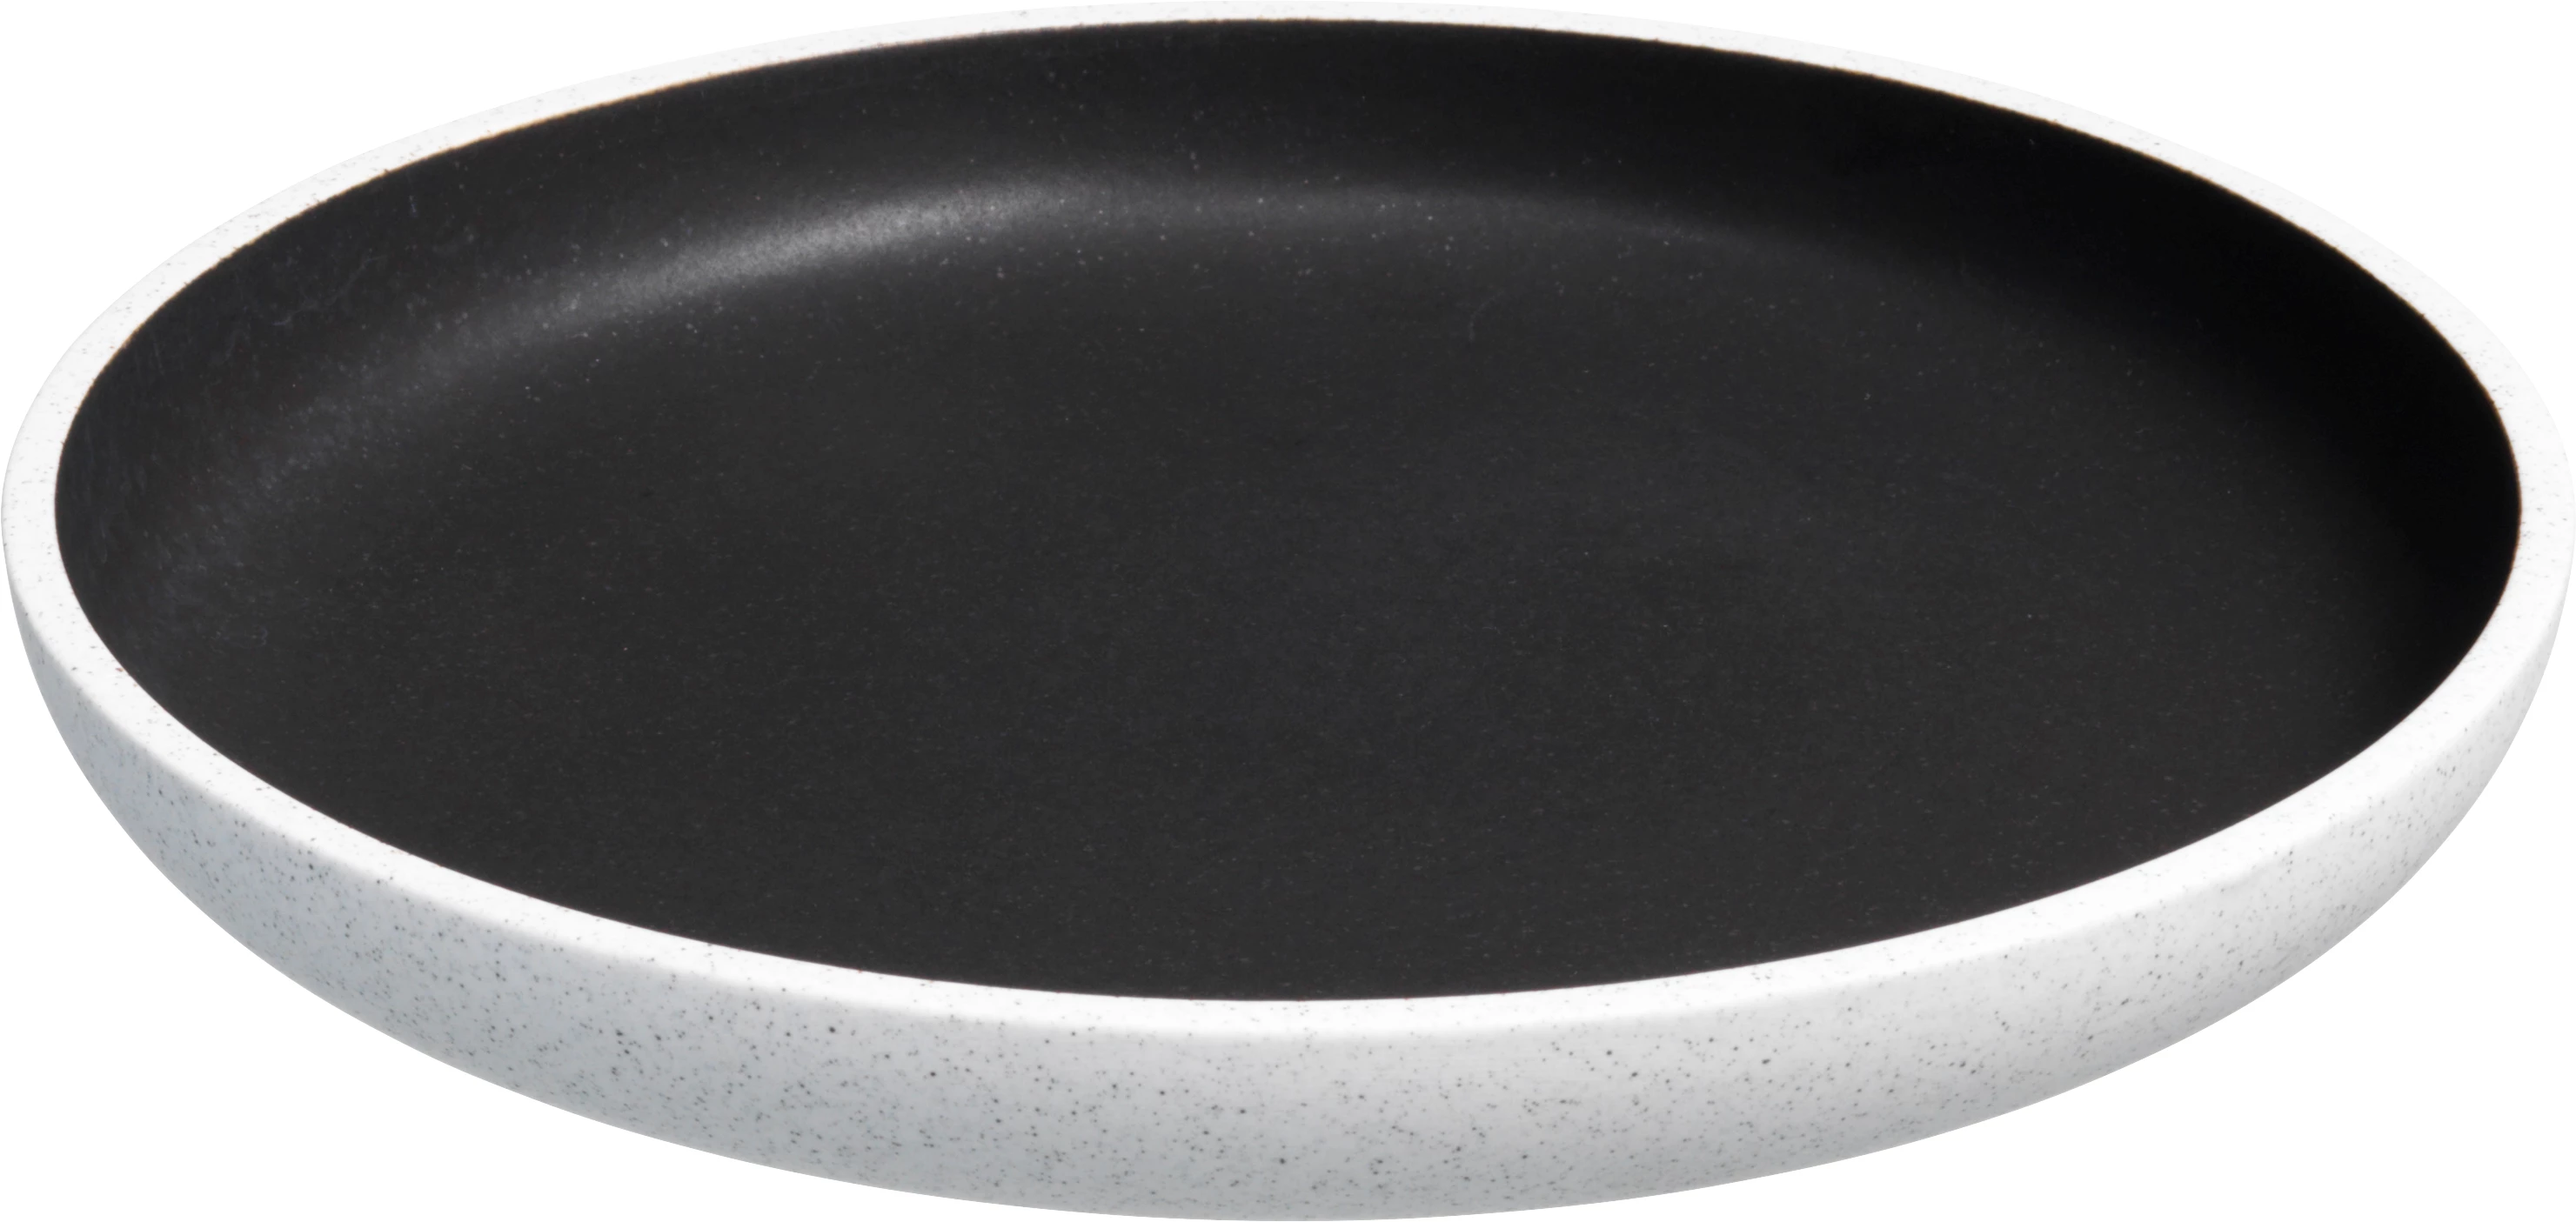 Salt tallerken uden fane, grå/brun, ø23 cm